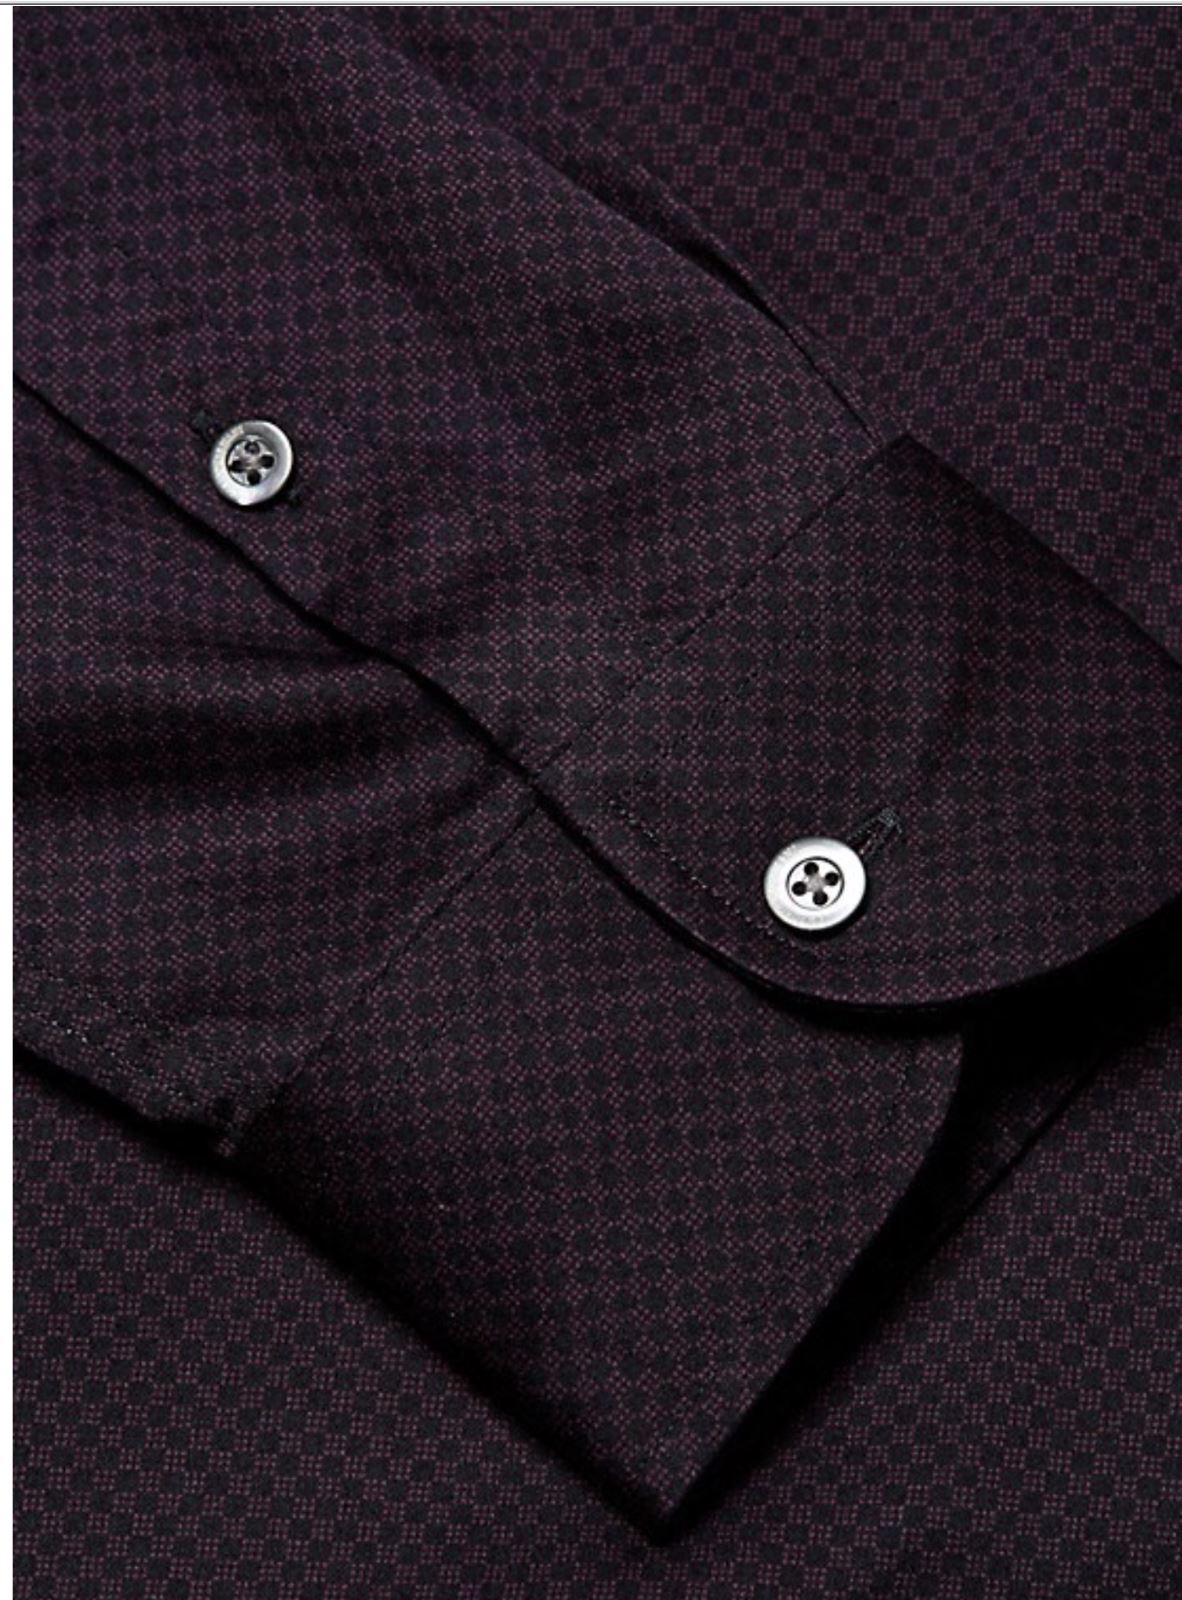 NWT $275 Emporio Armani Mens Mini Check Pattern Purple Shirt XL